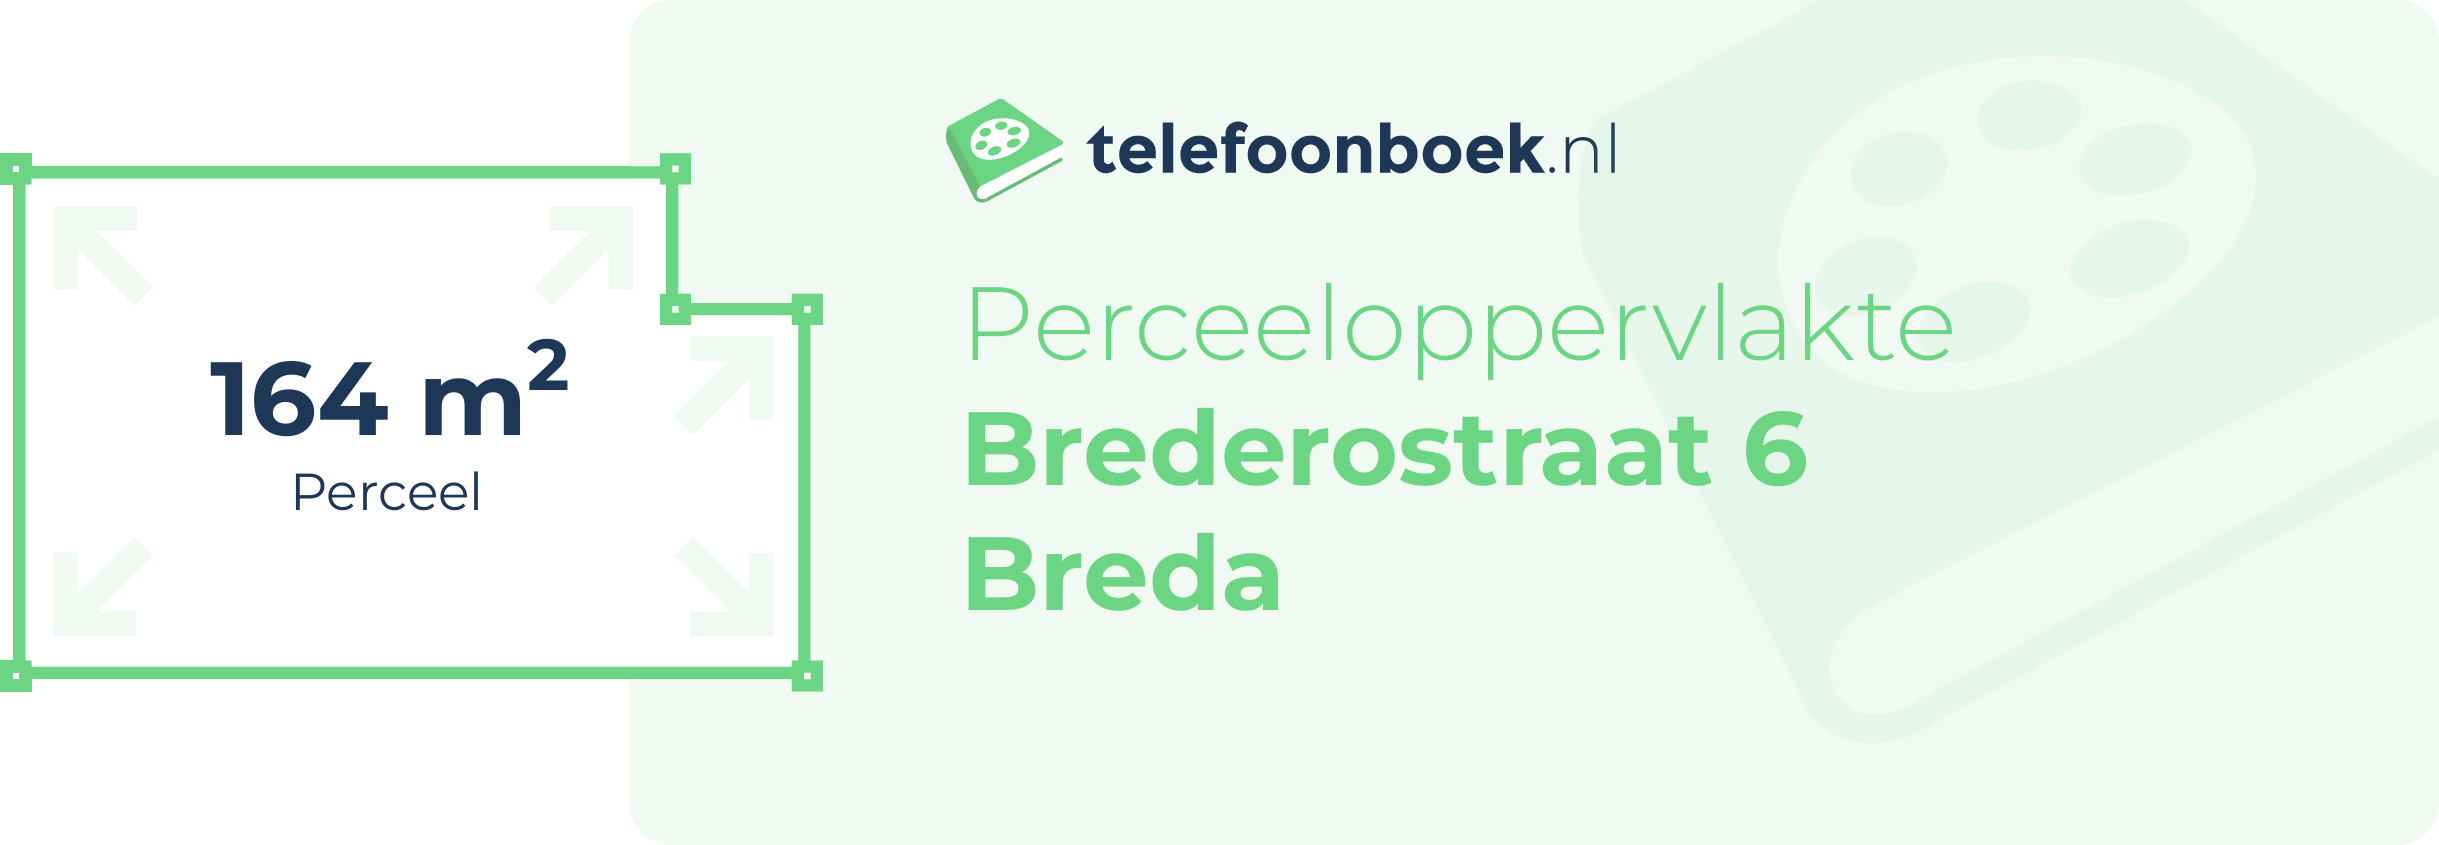 Perceeloppervlakte Brederostraat 6 Breda